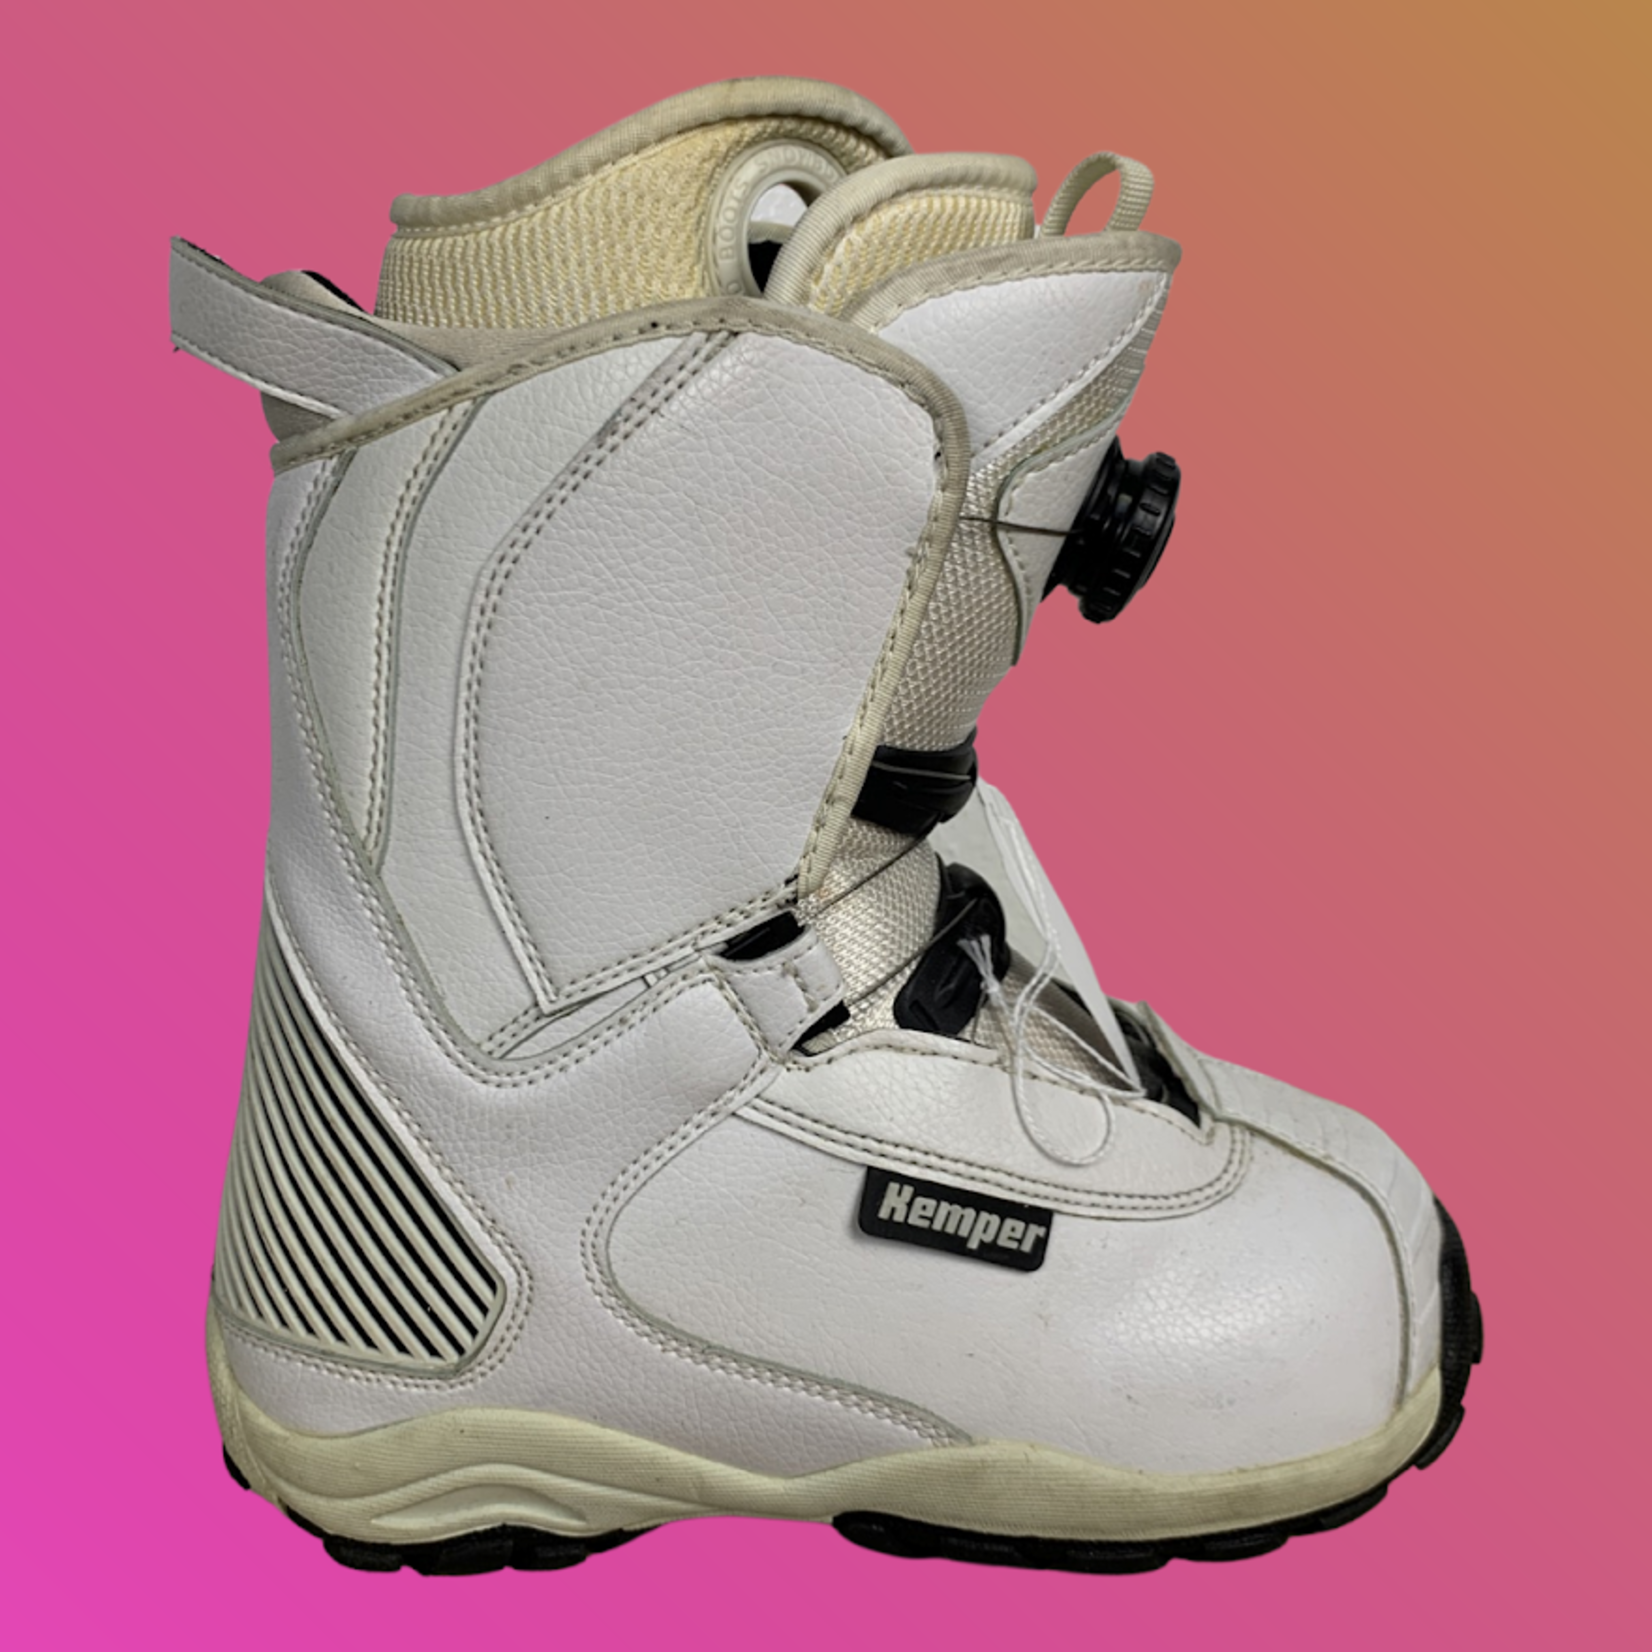 Kemper Kemper Boa Snowboard Boots, Size 7 WMNS